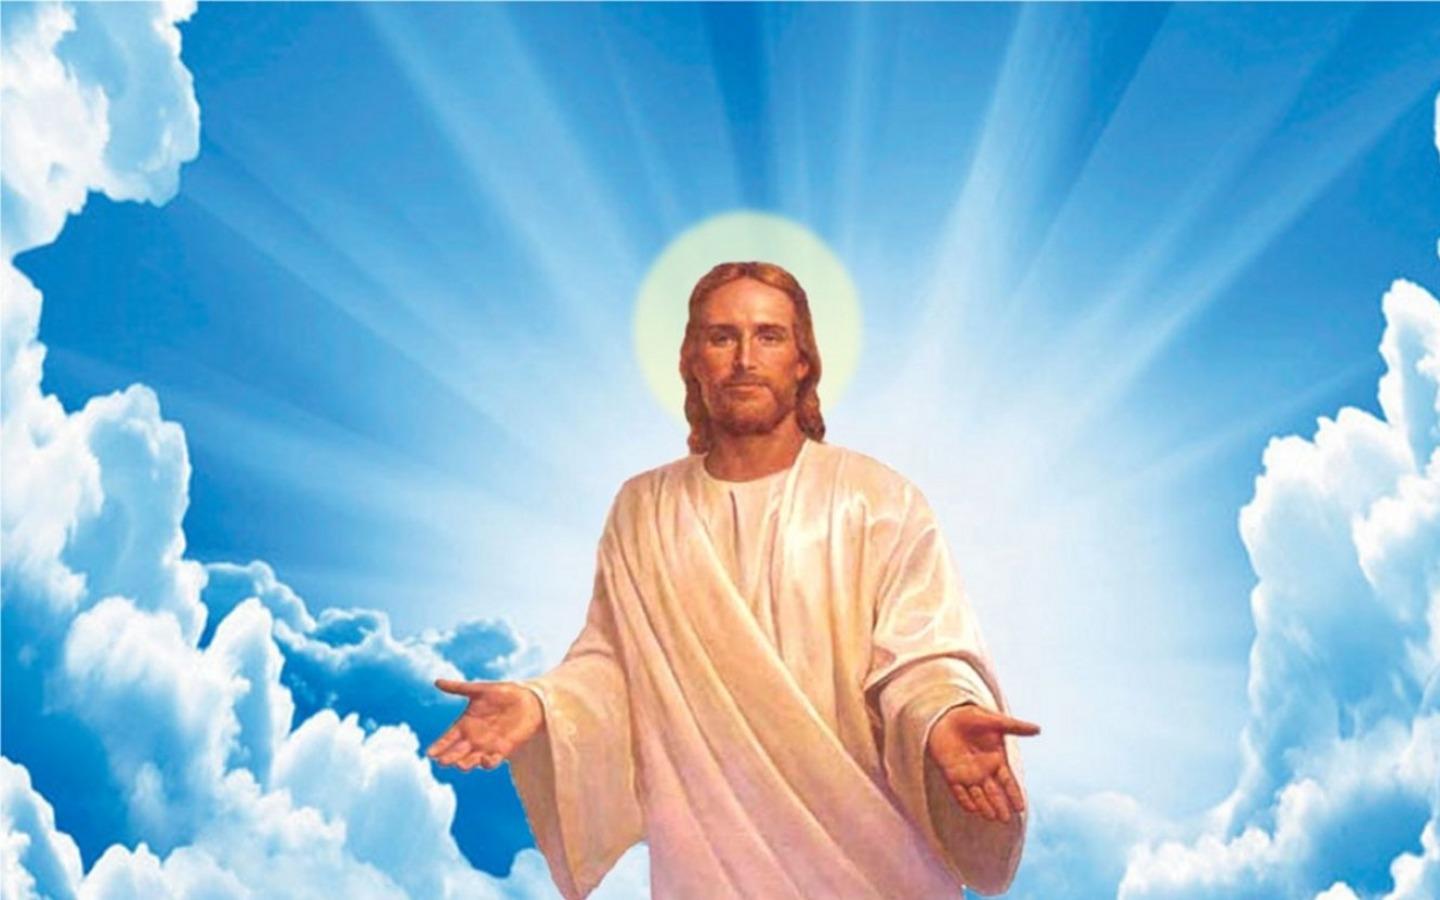 Chúa Giêsu Giảng Trong Tư Thế Đứng Hình minh họa Sẵn có  Tải xuống Hình ảnh  Ngay bây giờ  Ban phước tôn giáo Chúa Giêsu Kitô Cầu nguyện  iStock